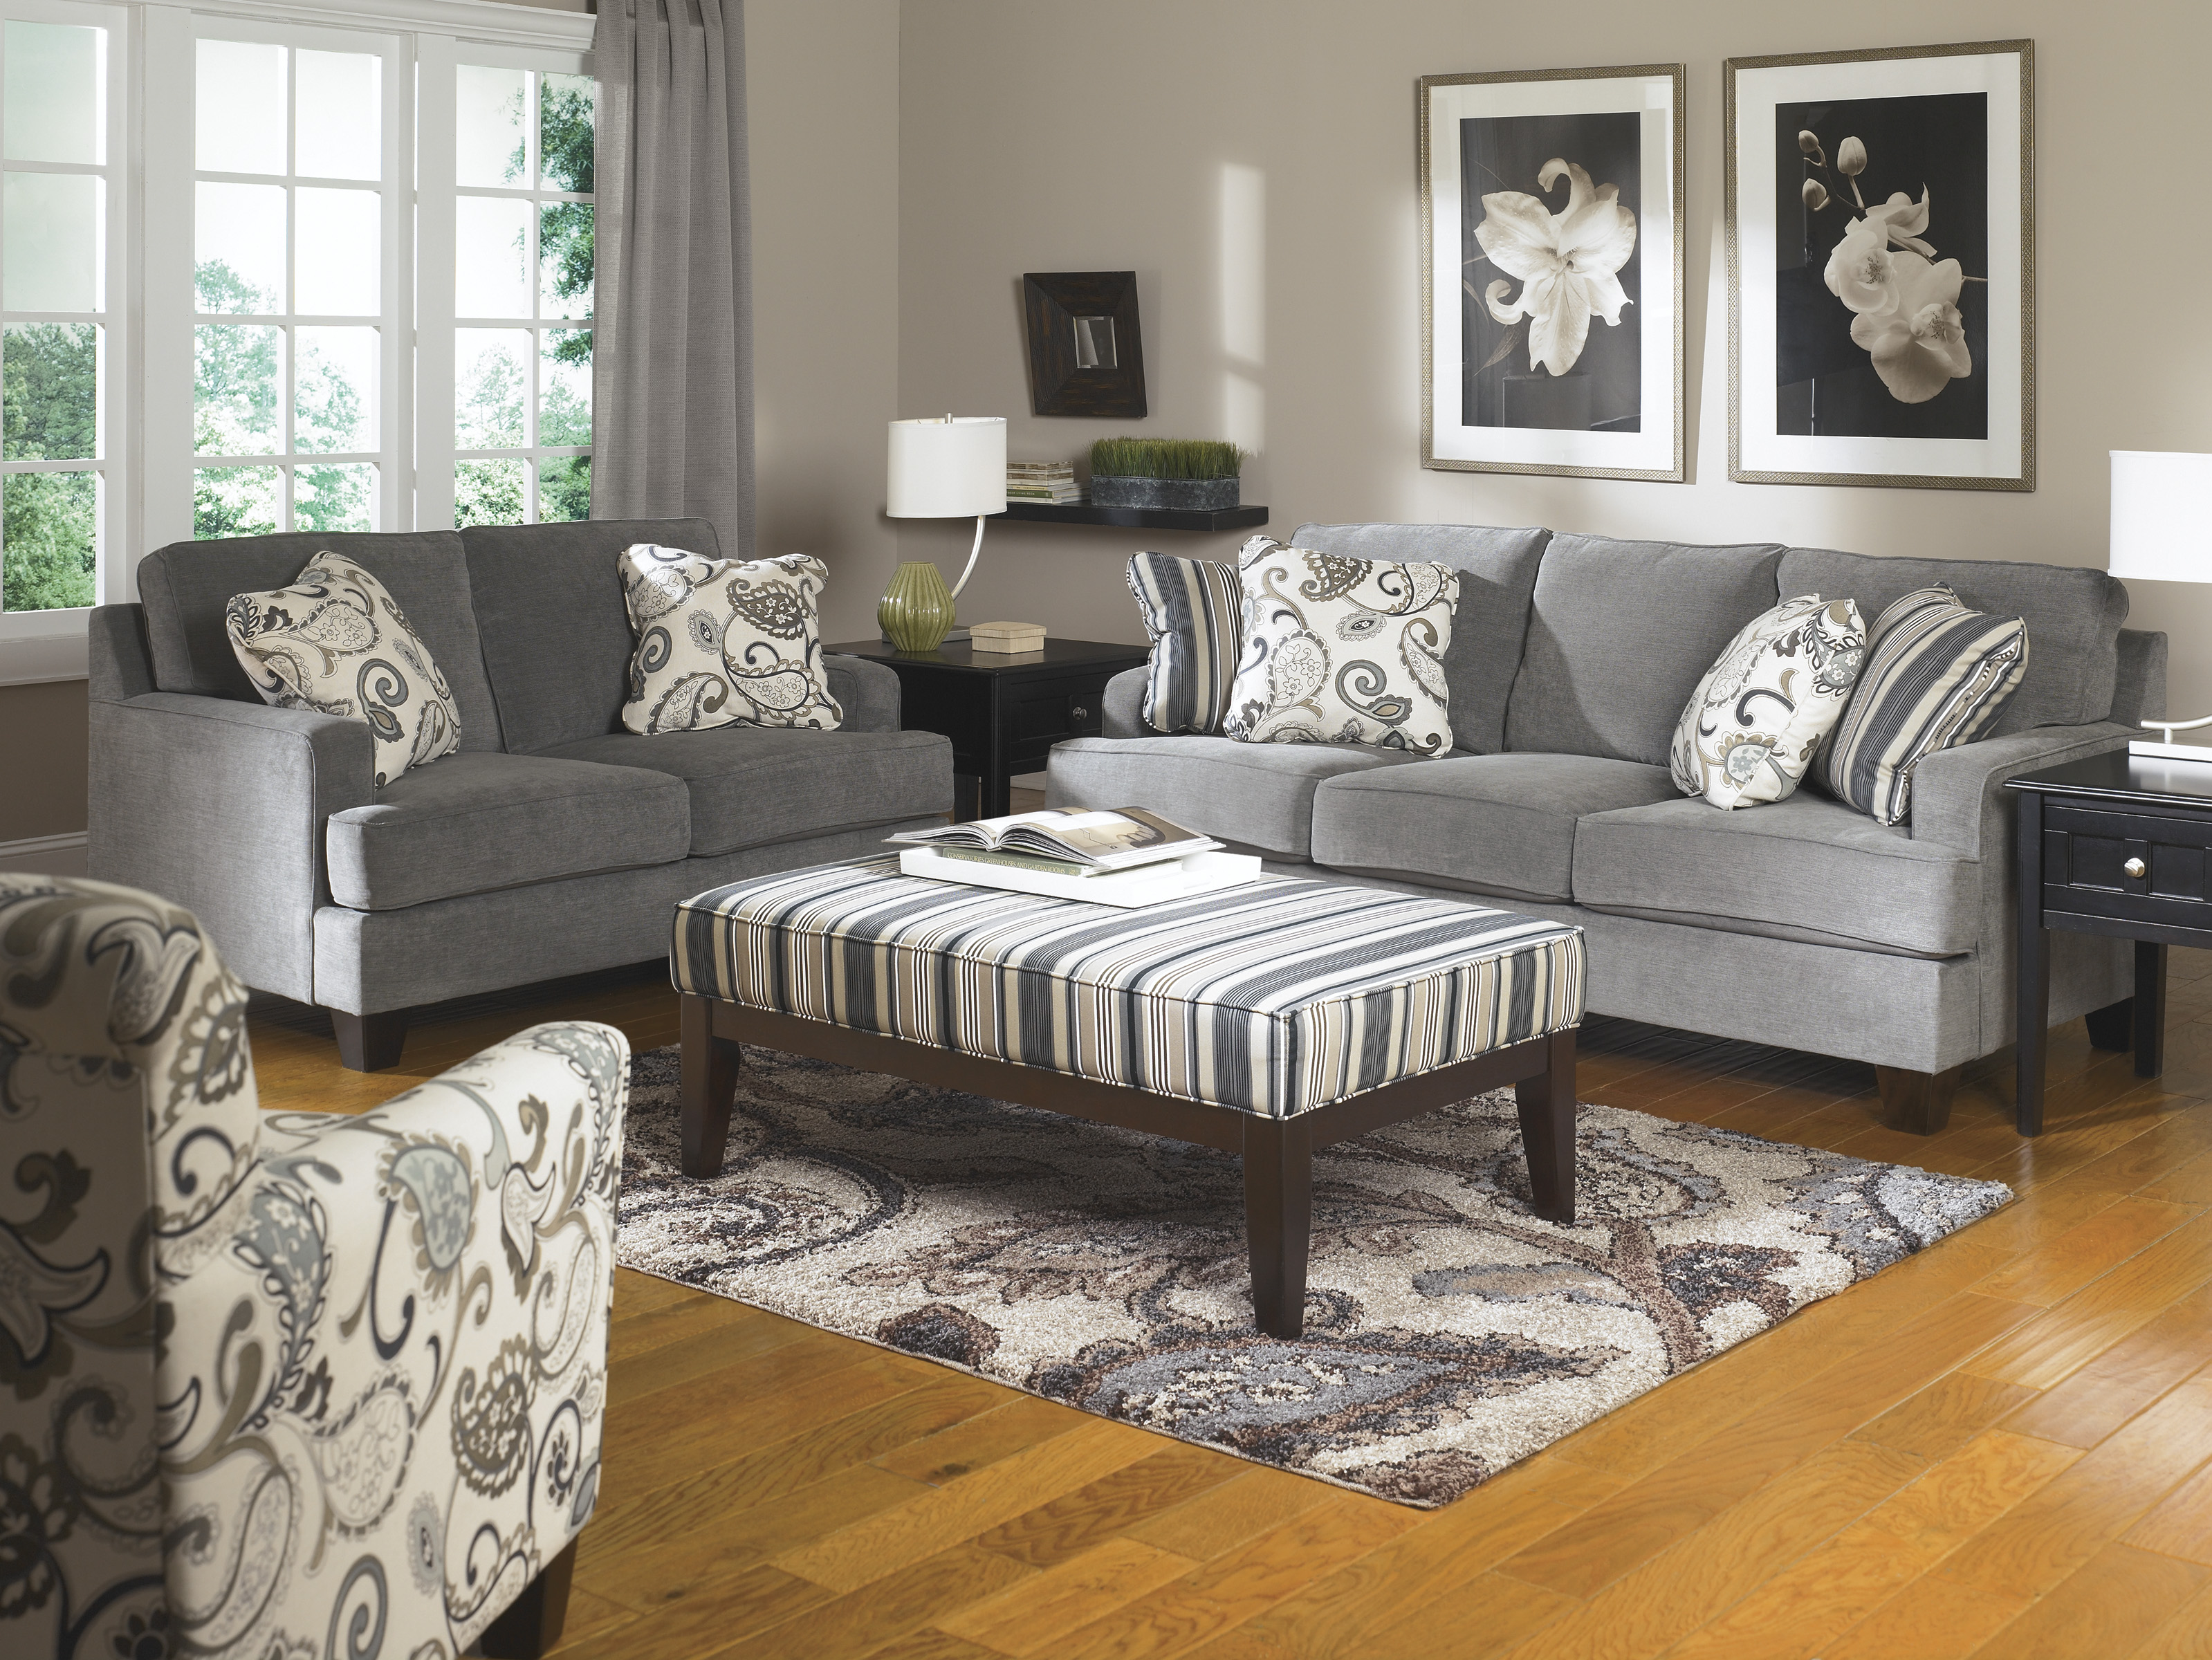 find living room furniture